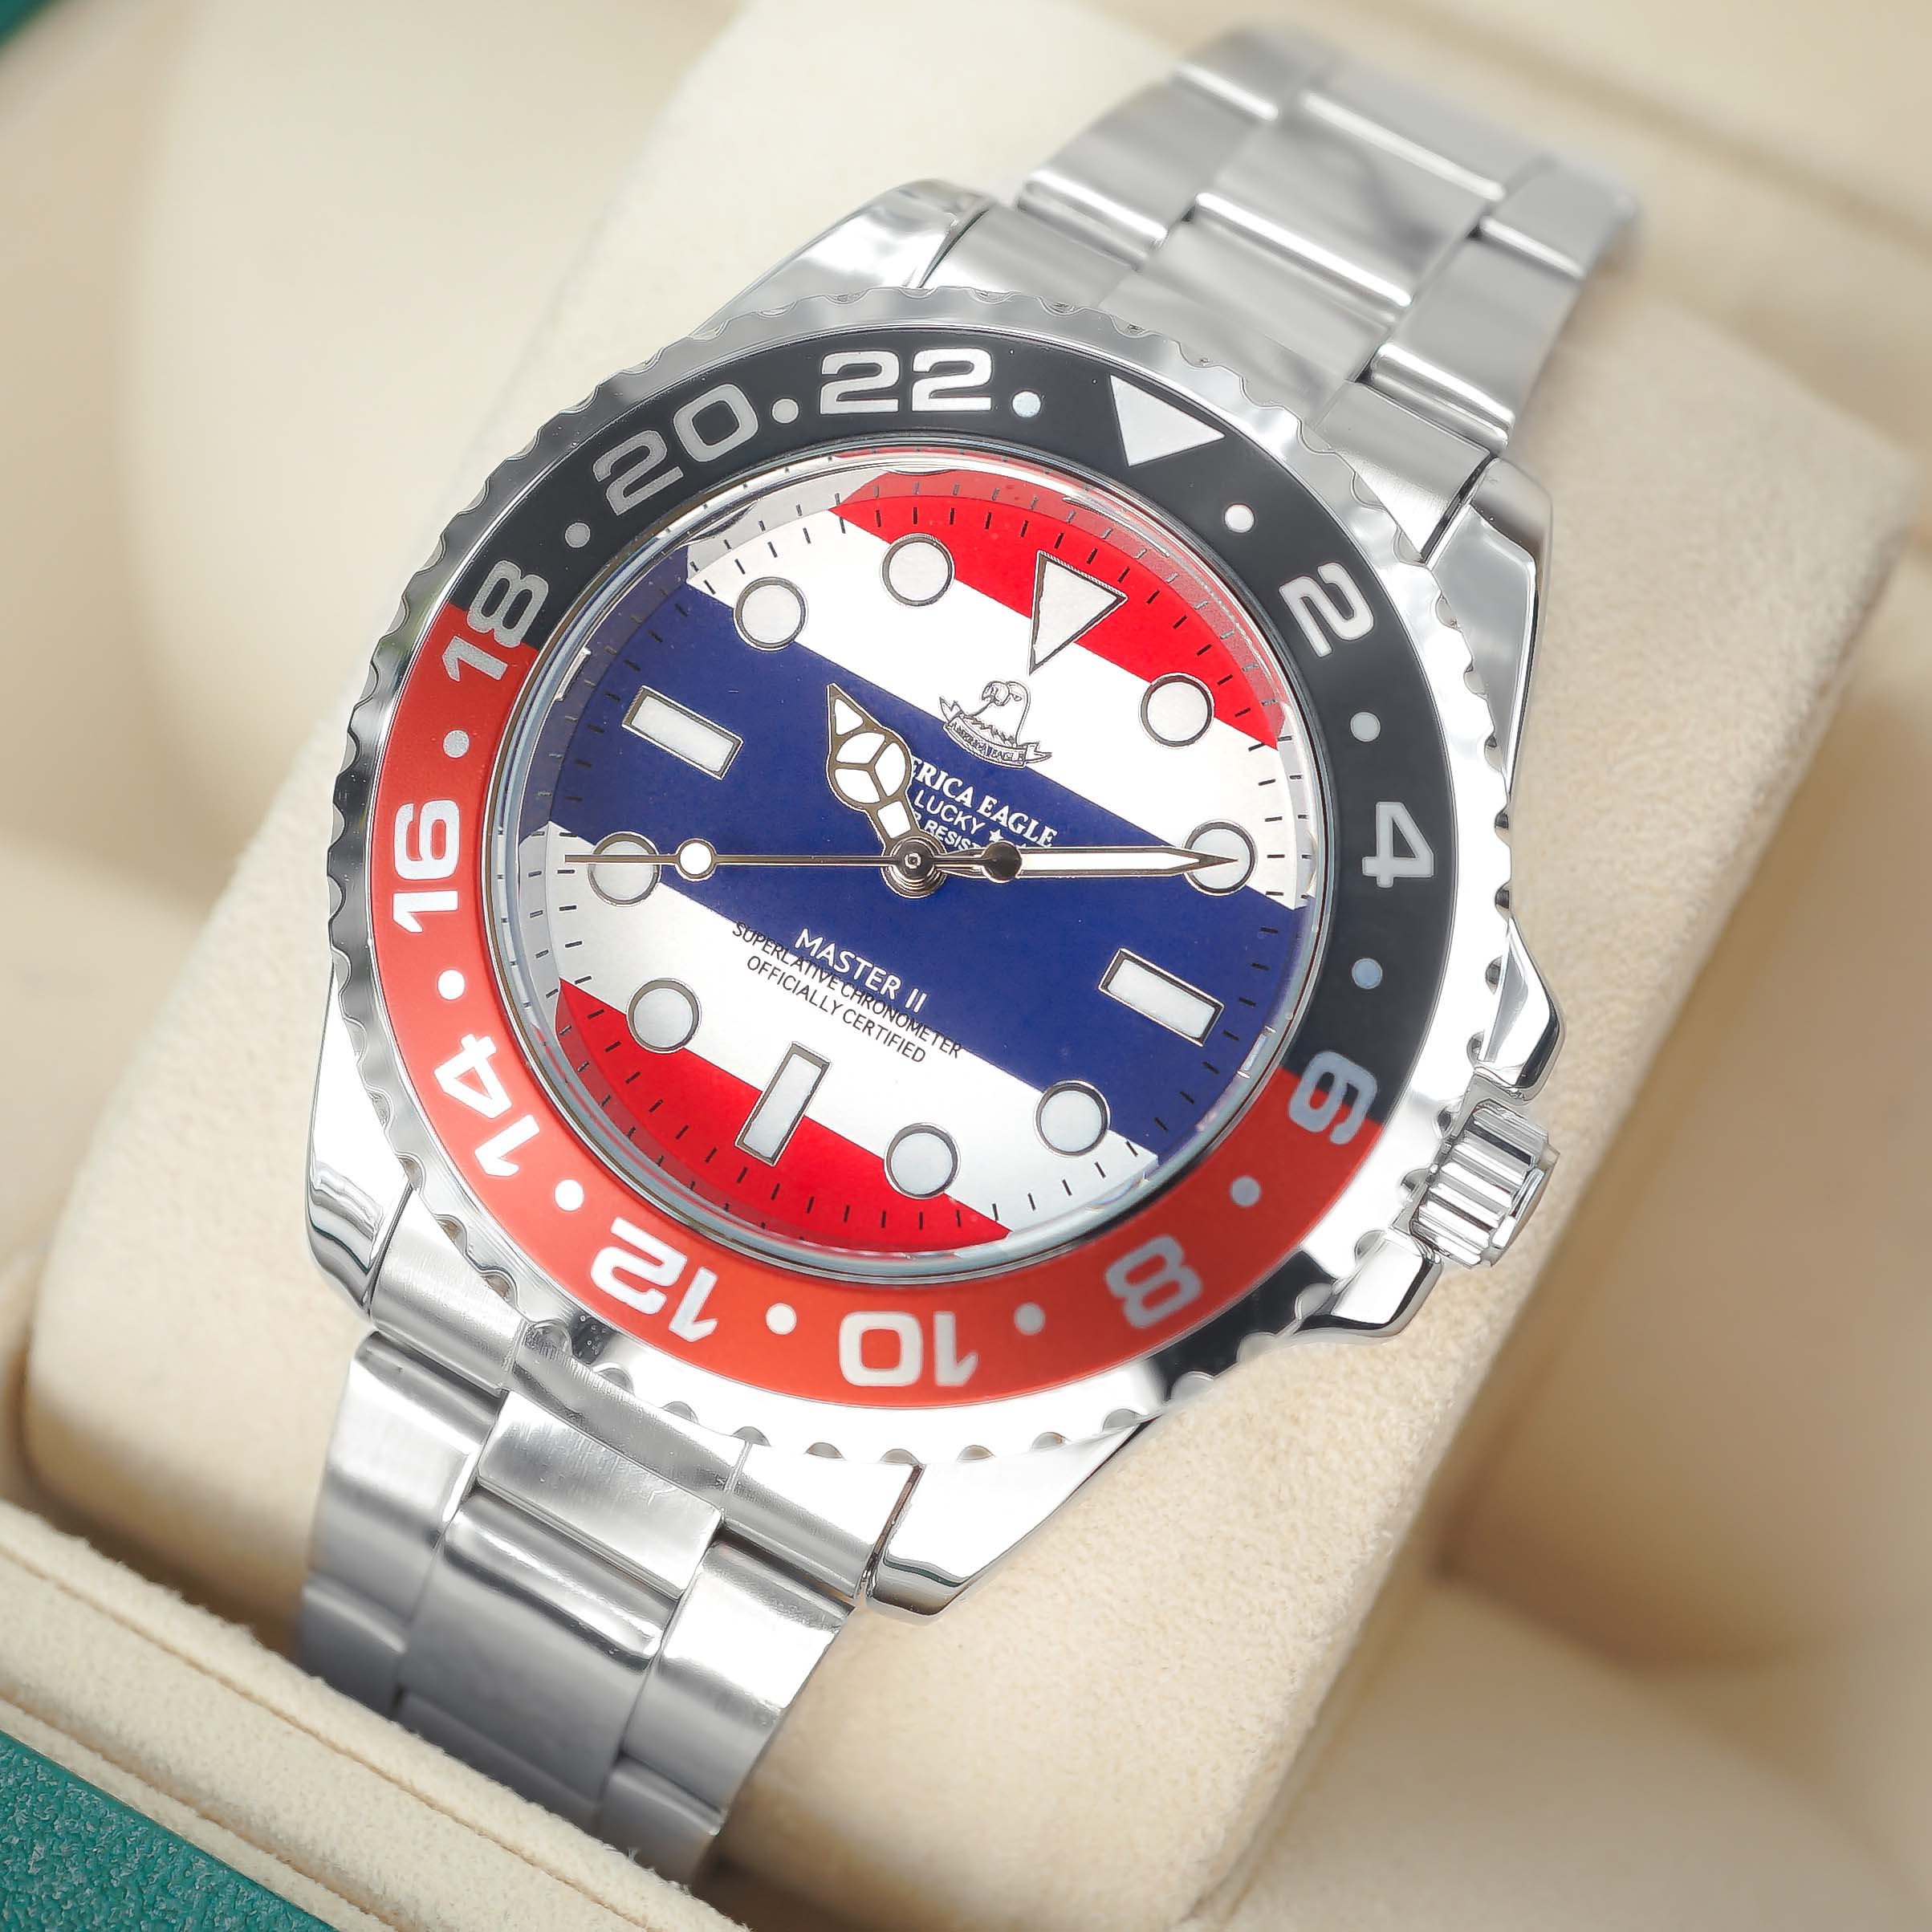 America Eagle นาฬิกาข้อมือผู้ชาย ราคาถูก แถมกล่องนาฬิกา รุ่น AE8007G หน้าธงชาติขอบดำแดง